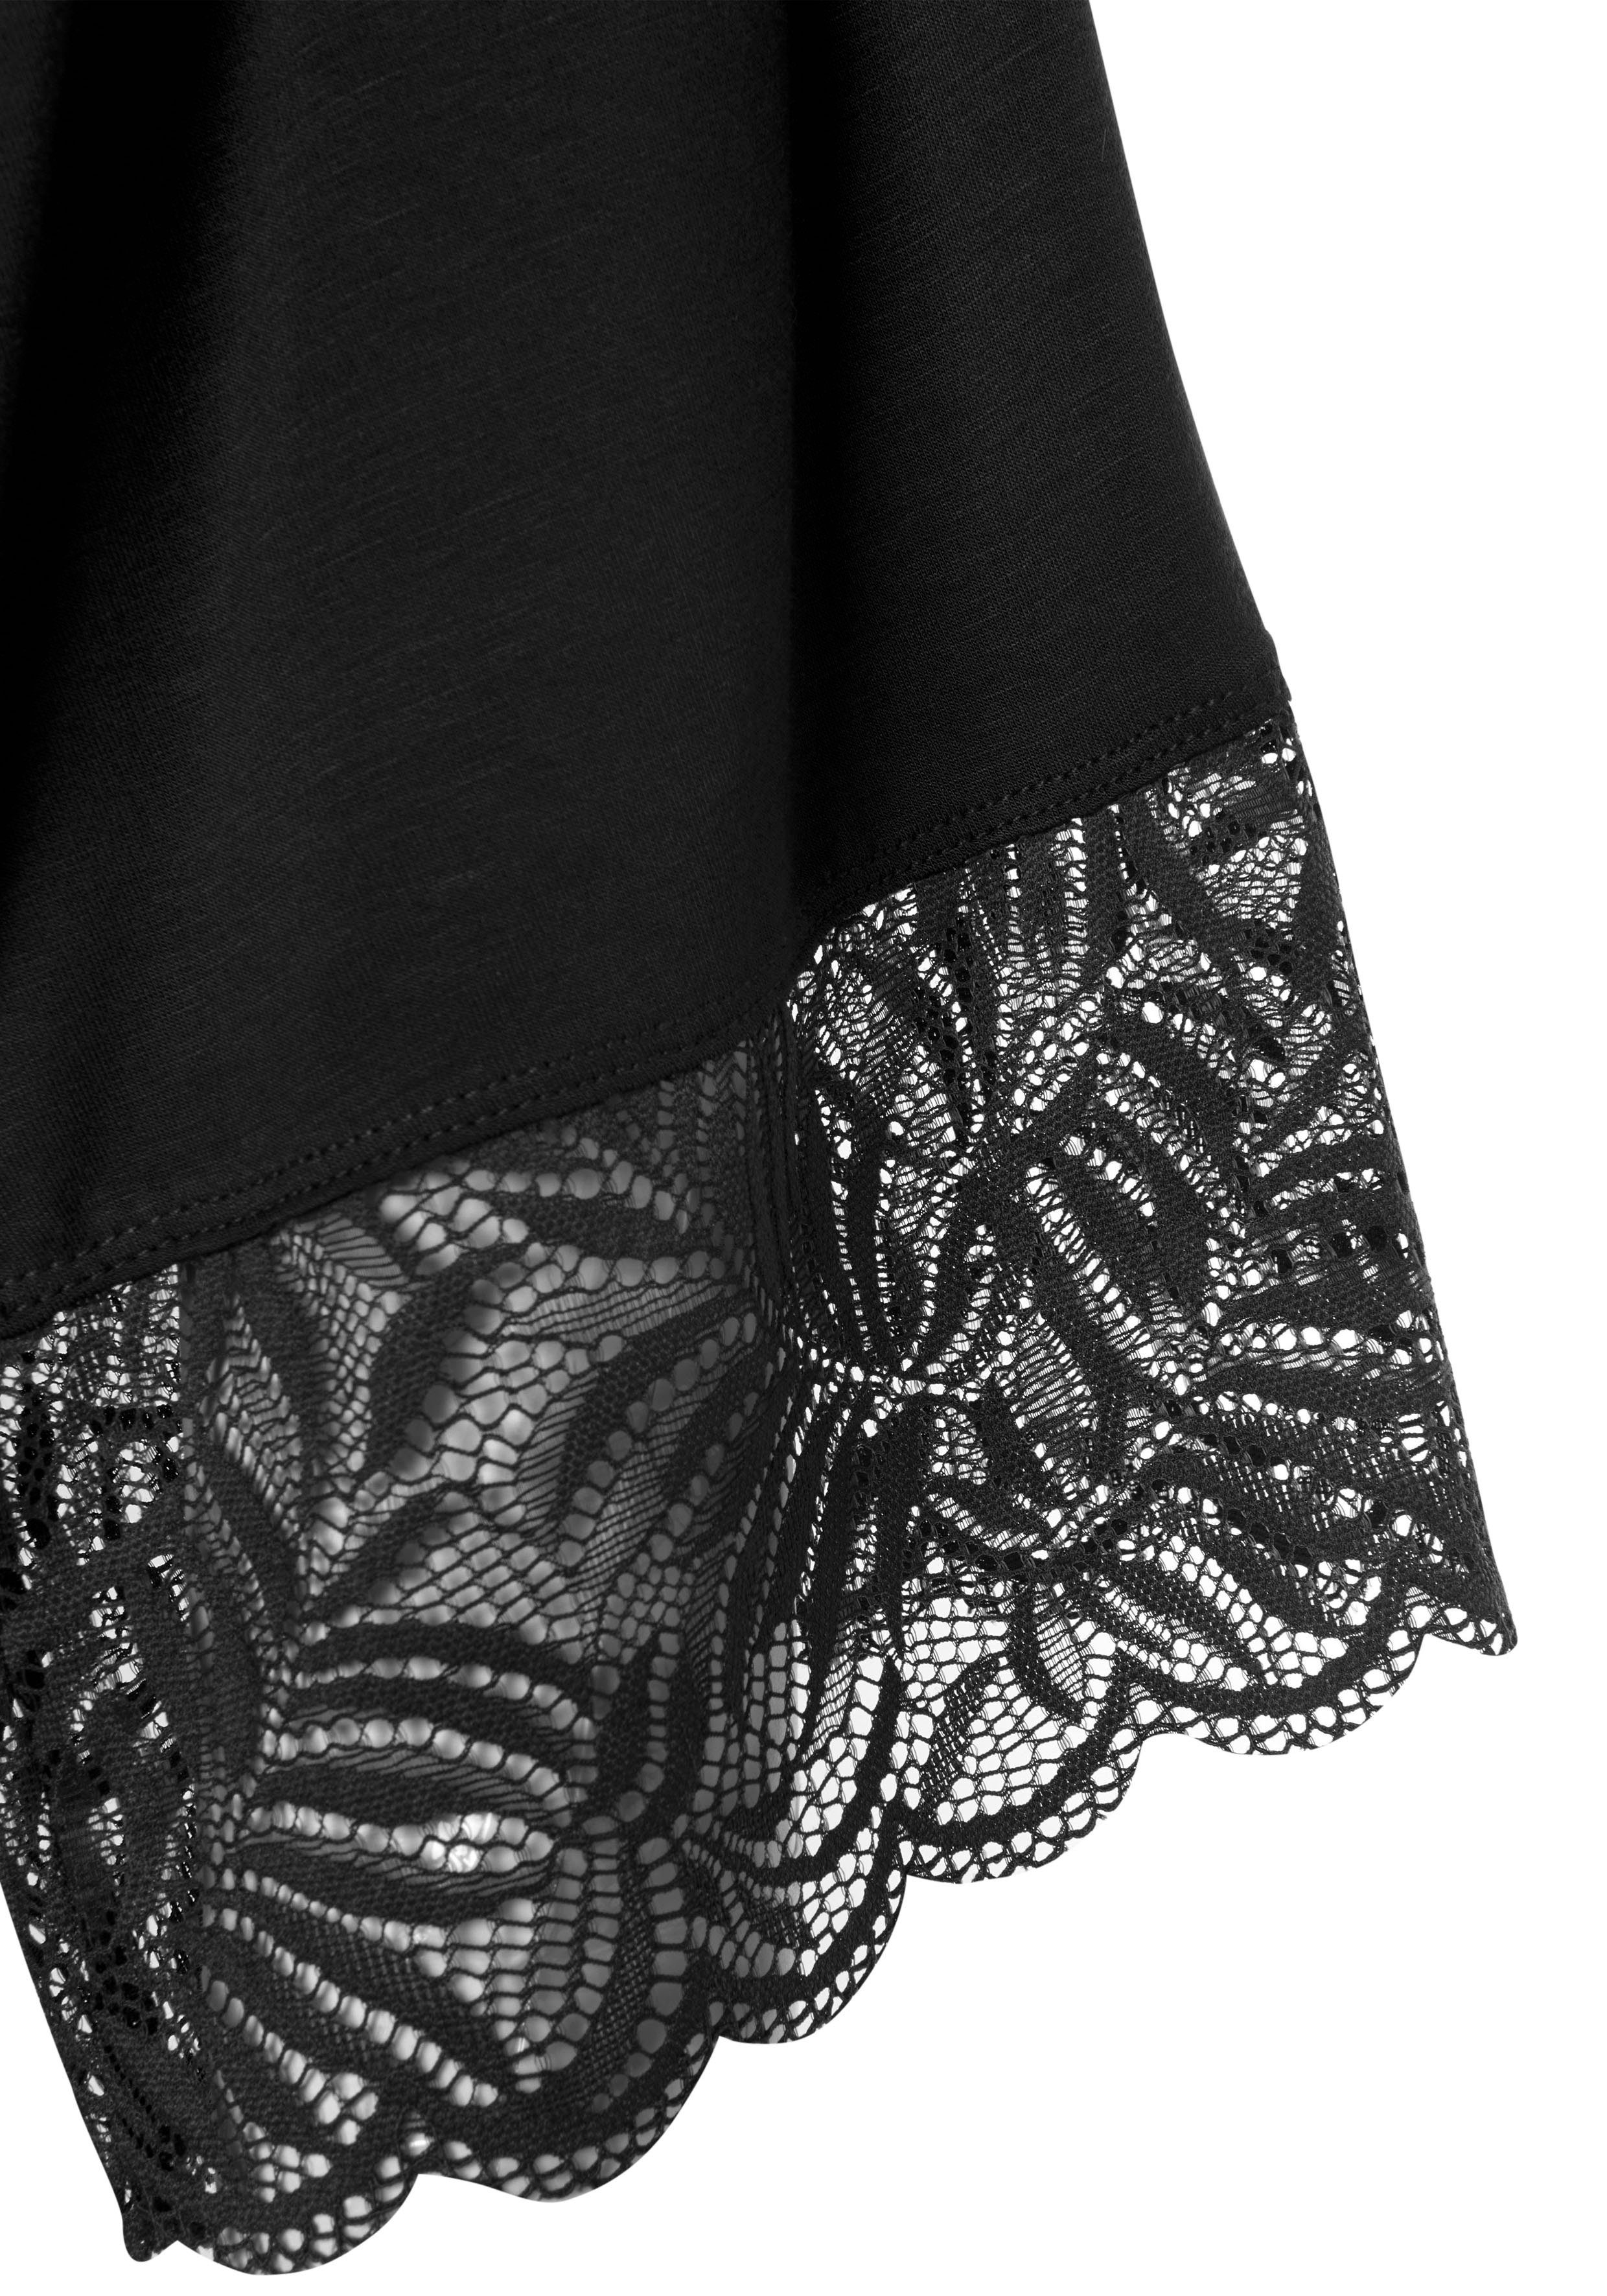 LASCANA Kimono, Kurzform, Viskose, Gürtel, Spitzendetails schwarz mit schönen Kimono-Kragen